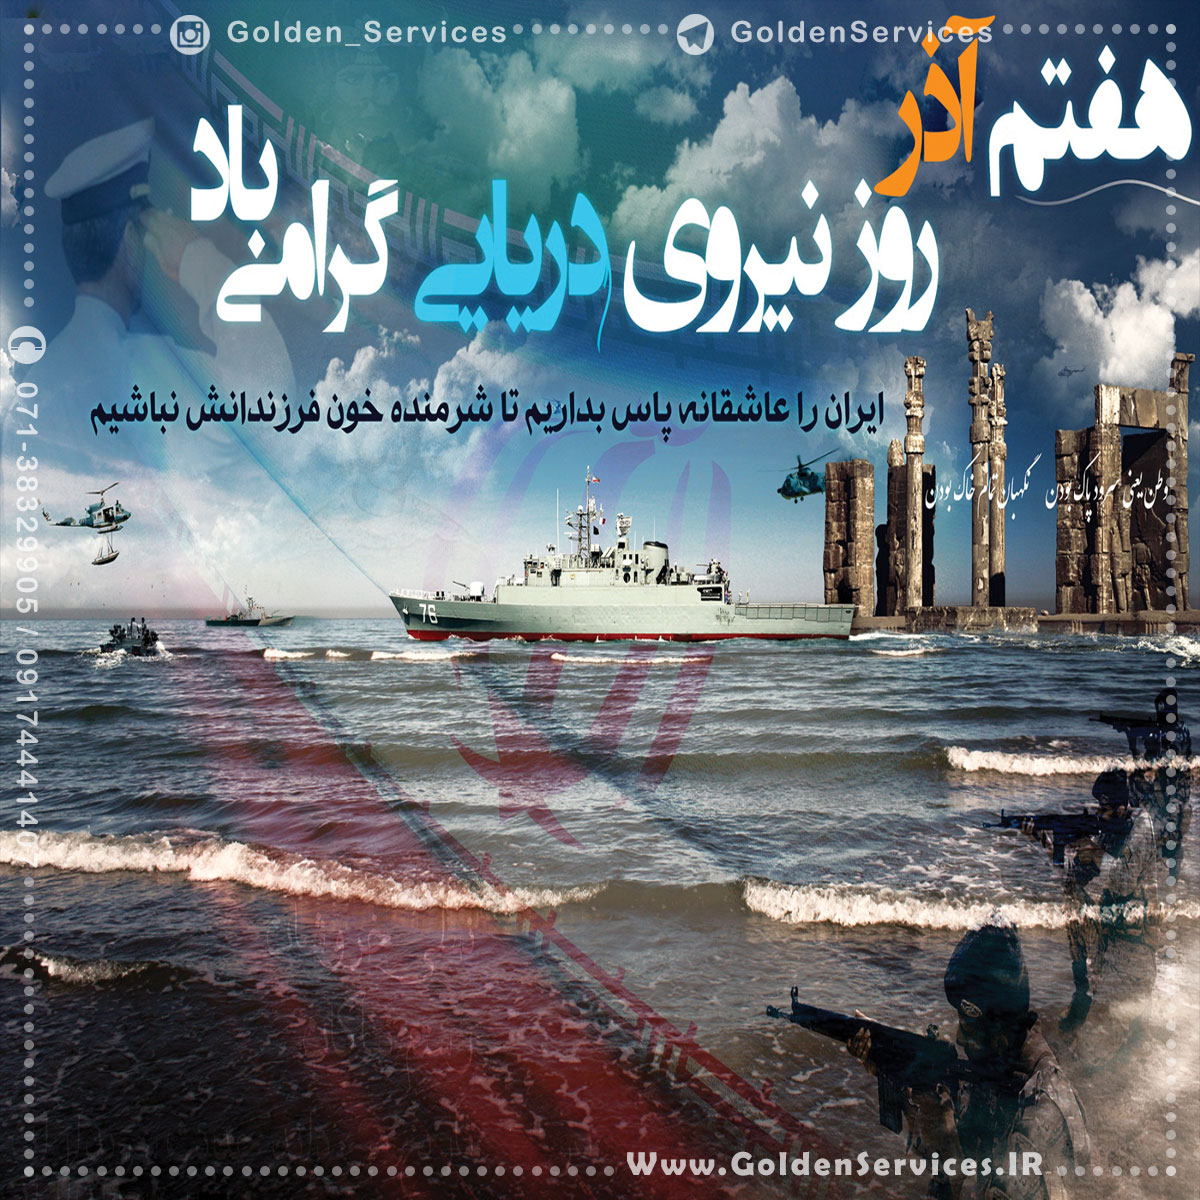  7 آذر - روز نیروی دریایی ارتش جمهوری اسلامی ایران 